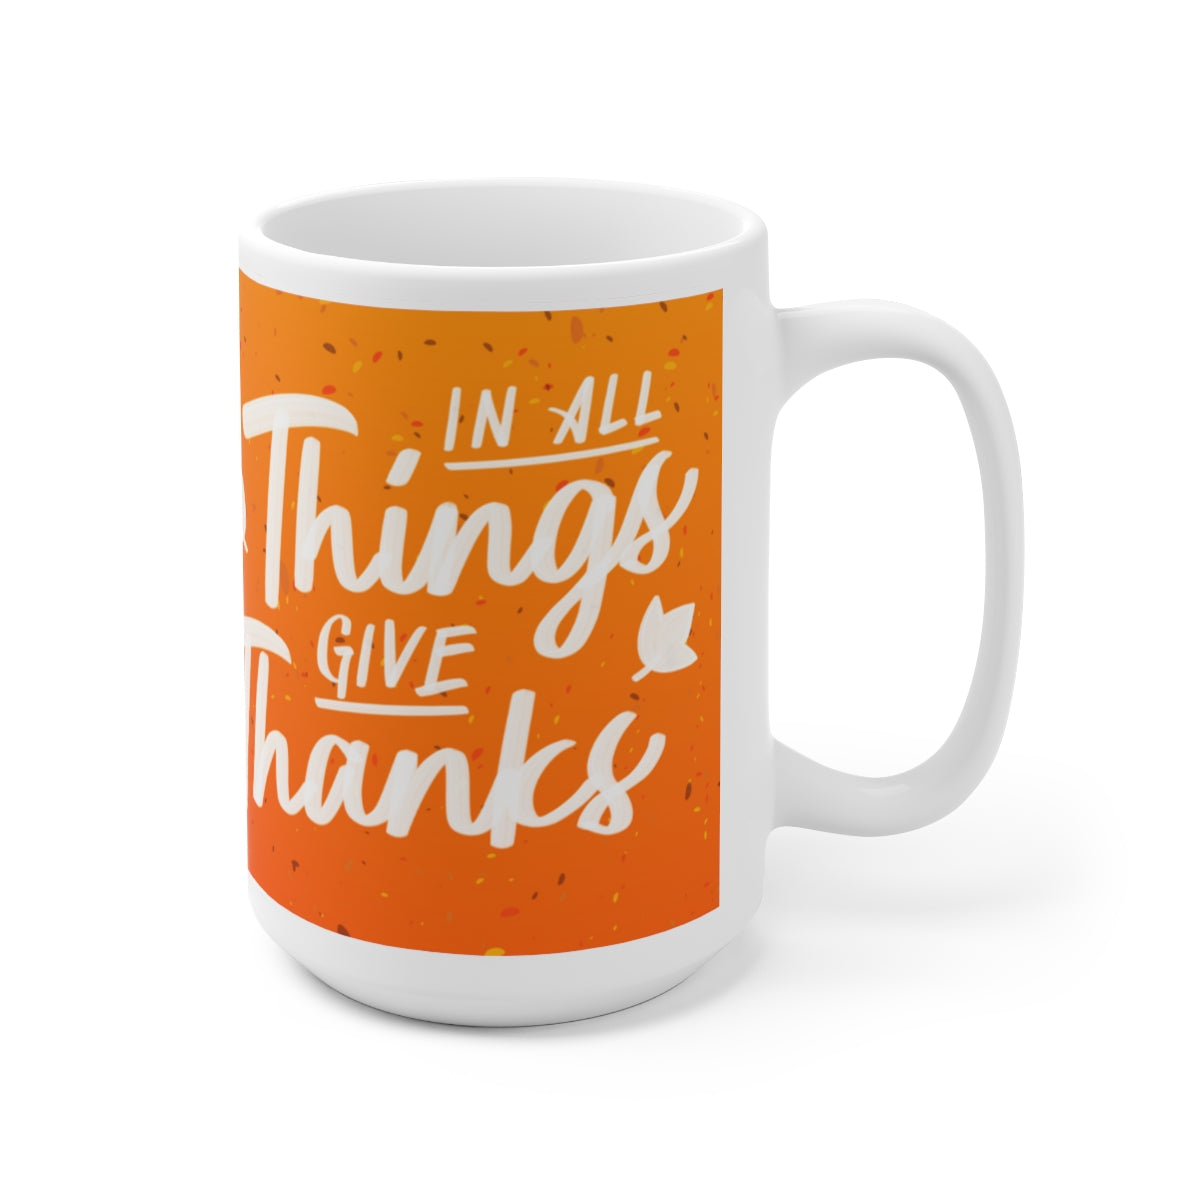 give thanks message on mug